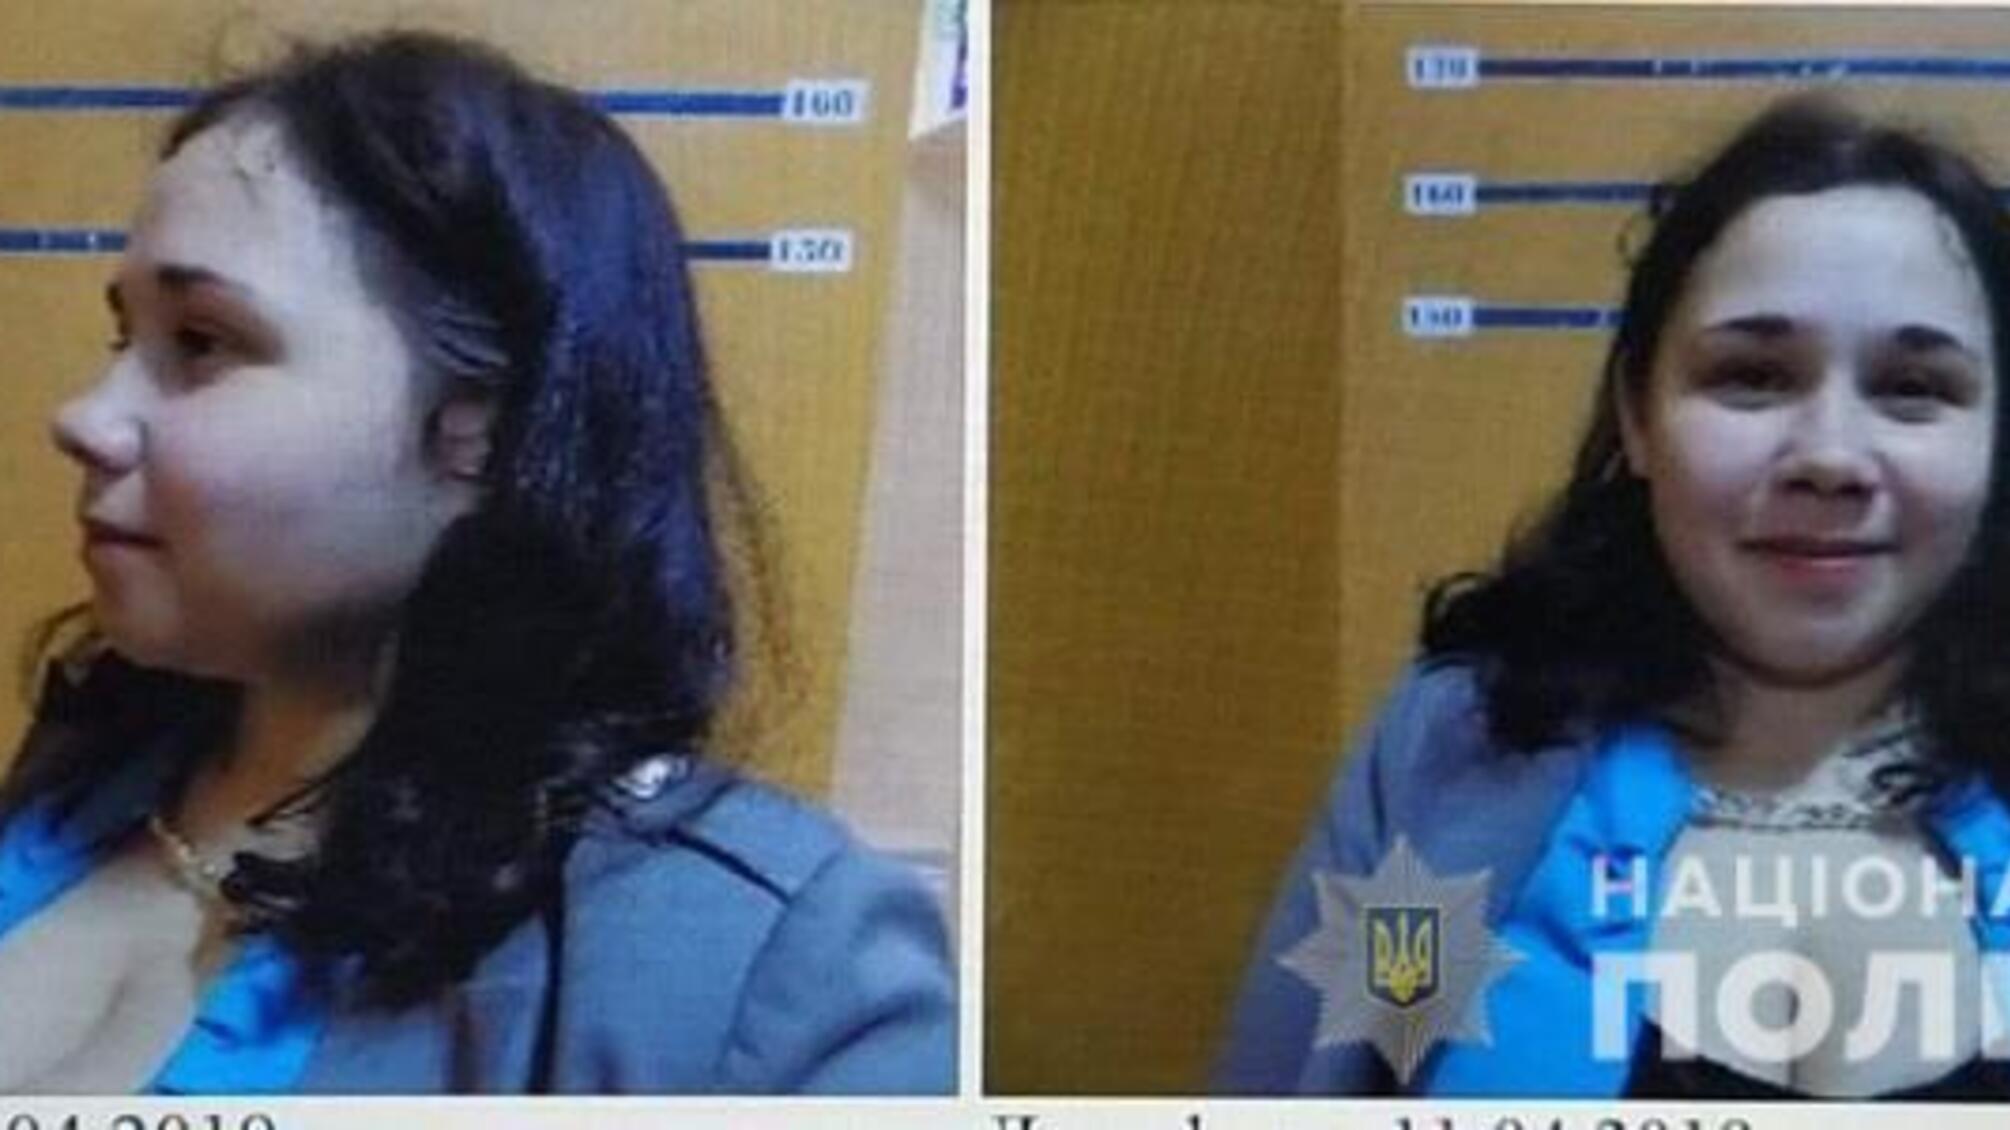 На Луганщині поліцейські розшукують жінку, яка підозрюється у скоєнні розбійного нападу